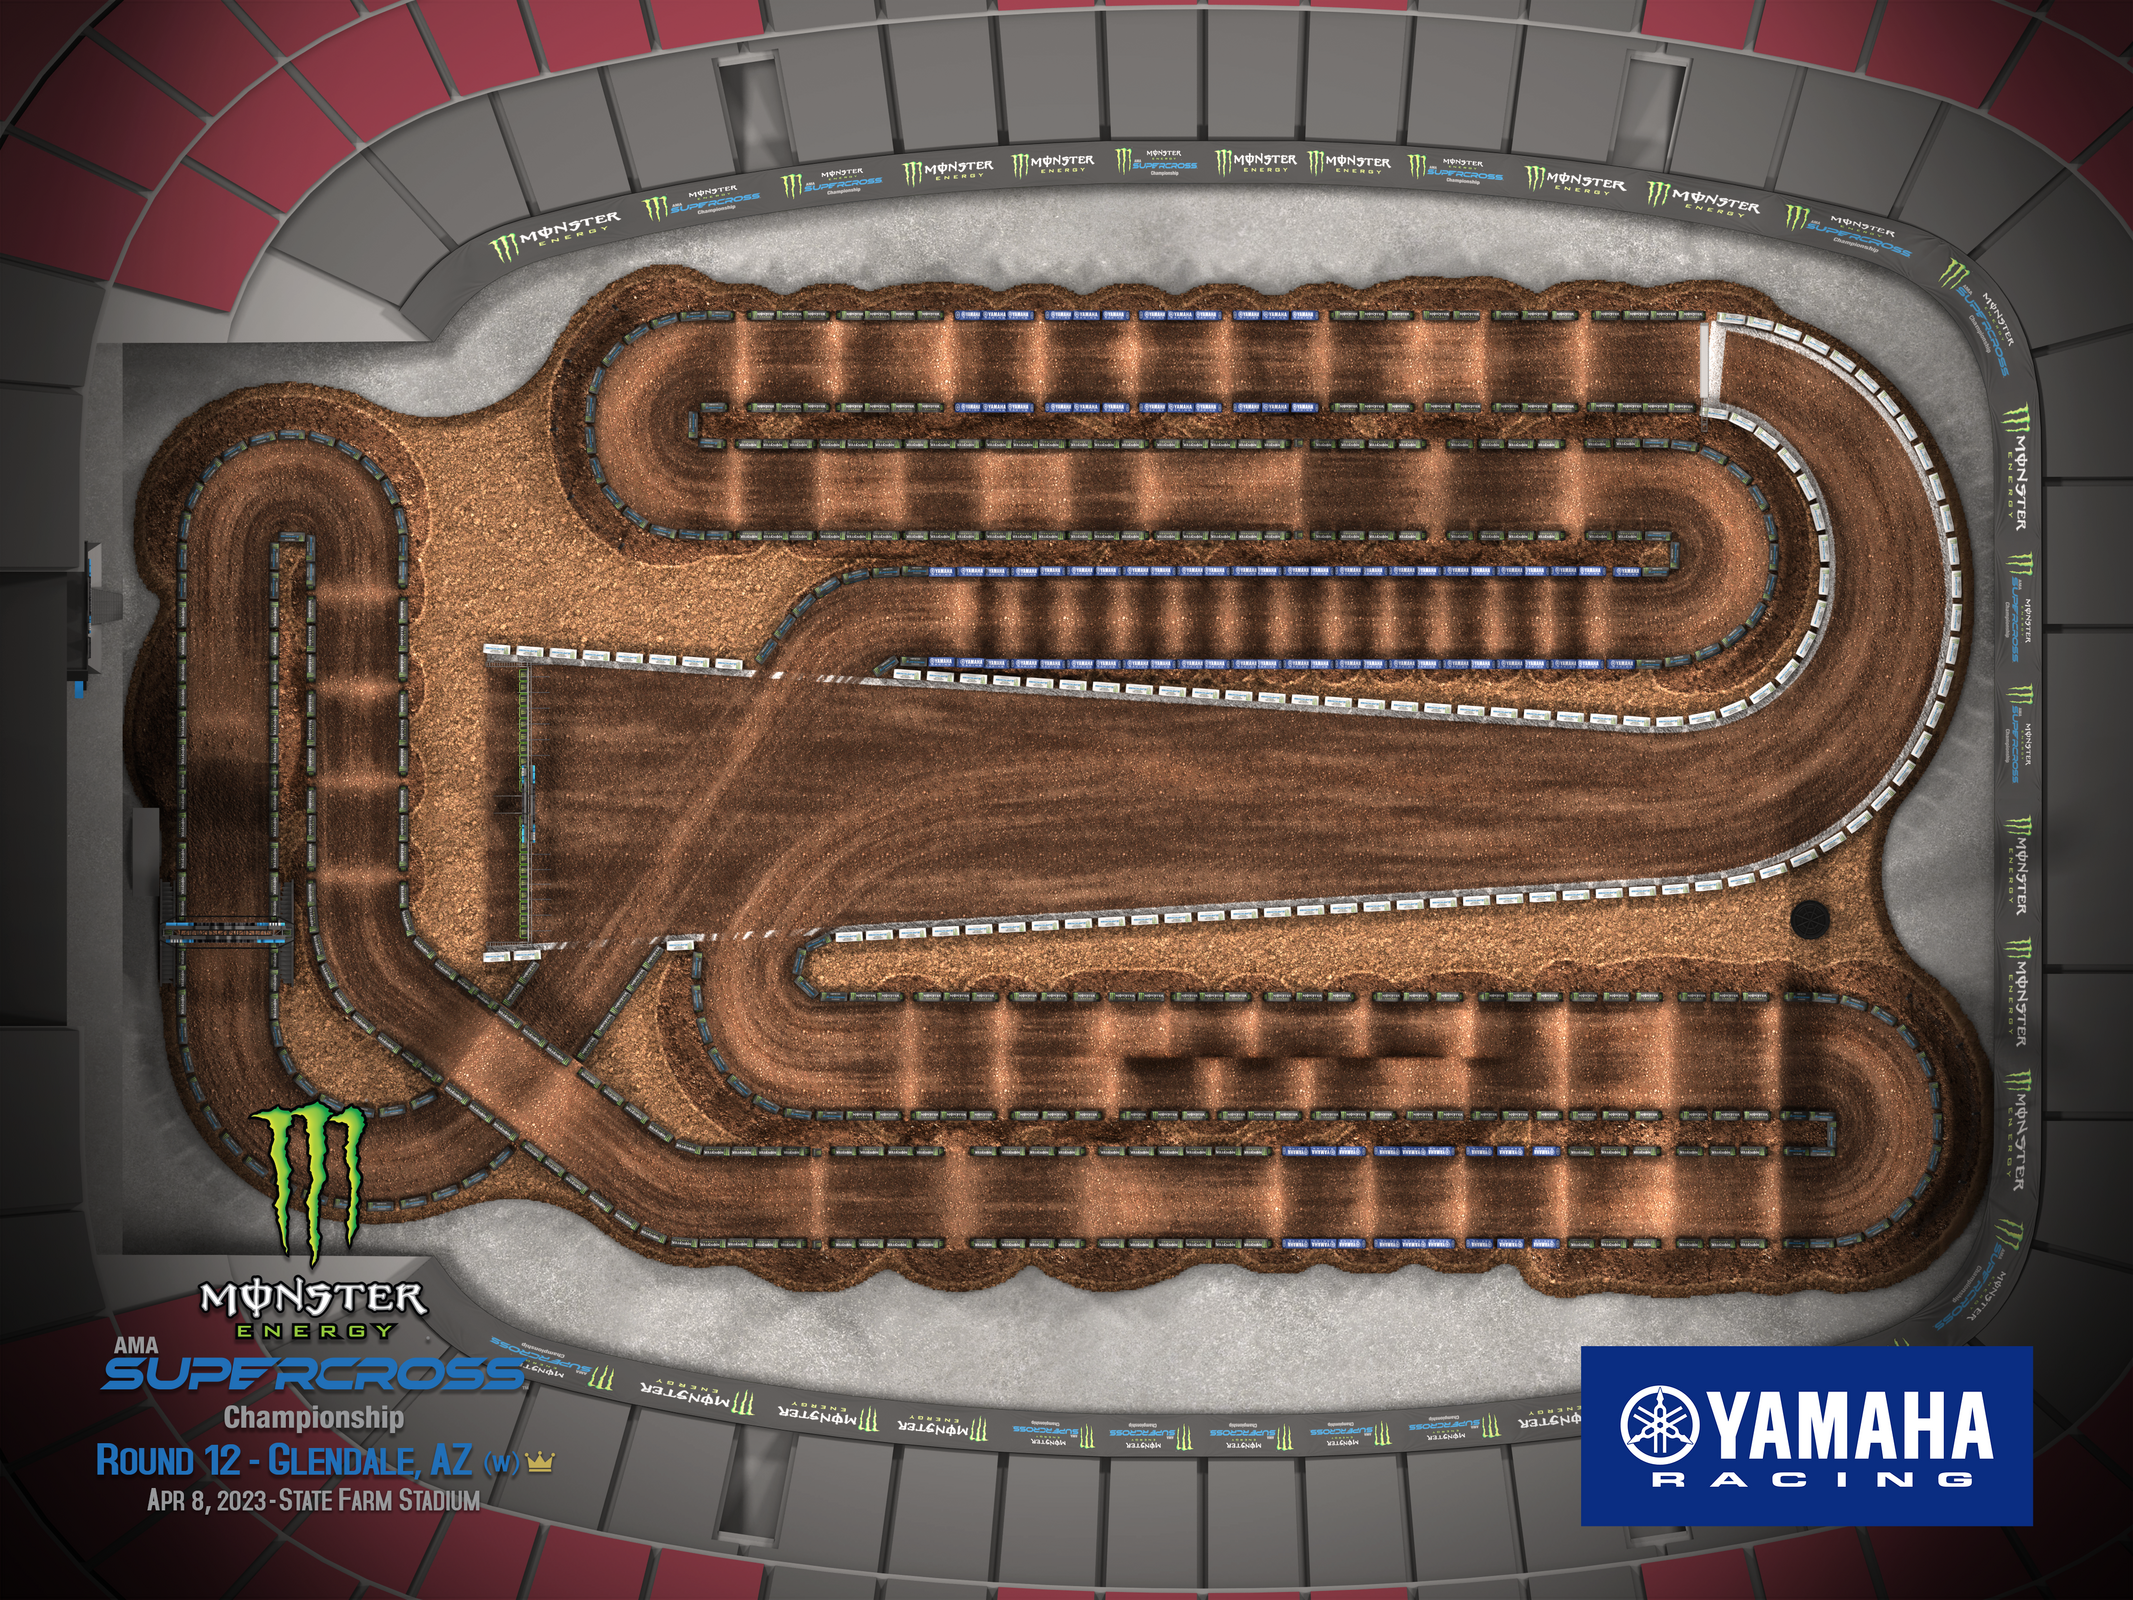 2023 Monster Energy Supercross Track Maps Revealed - Motocross